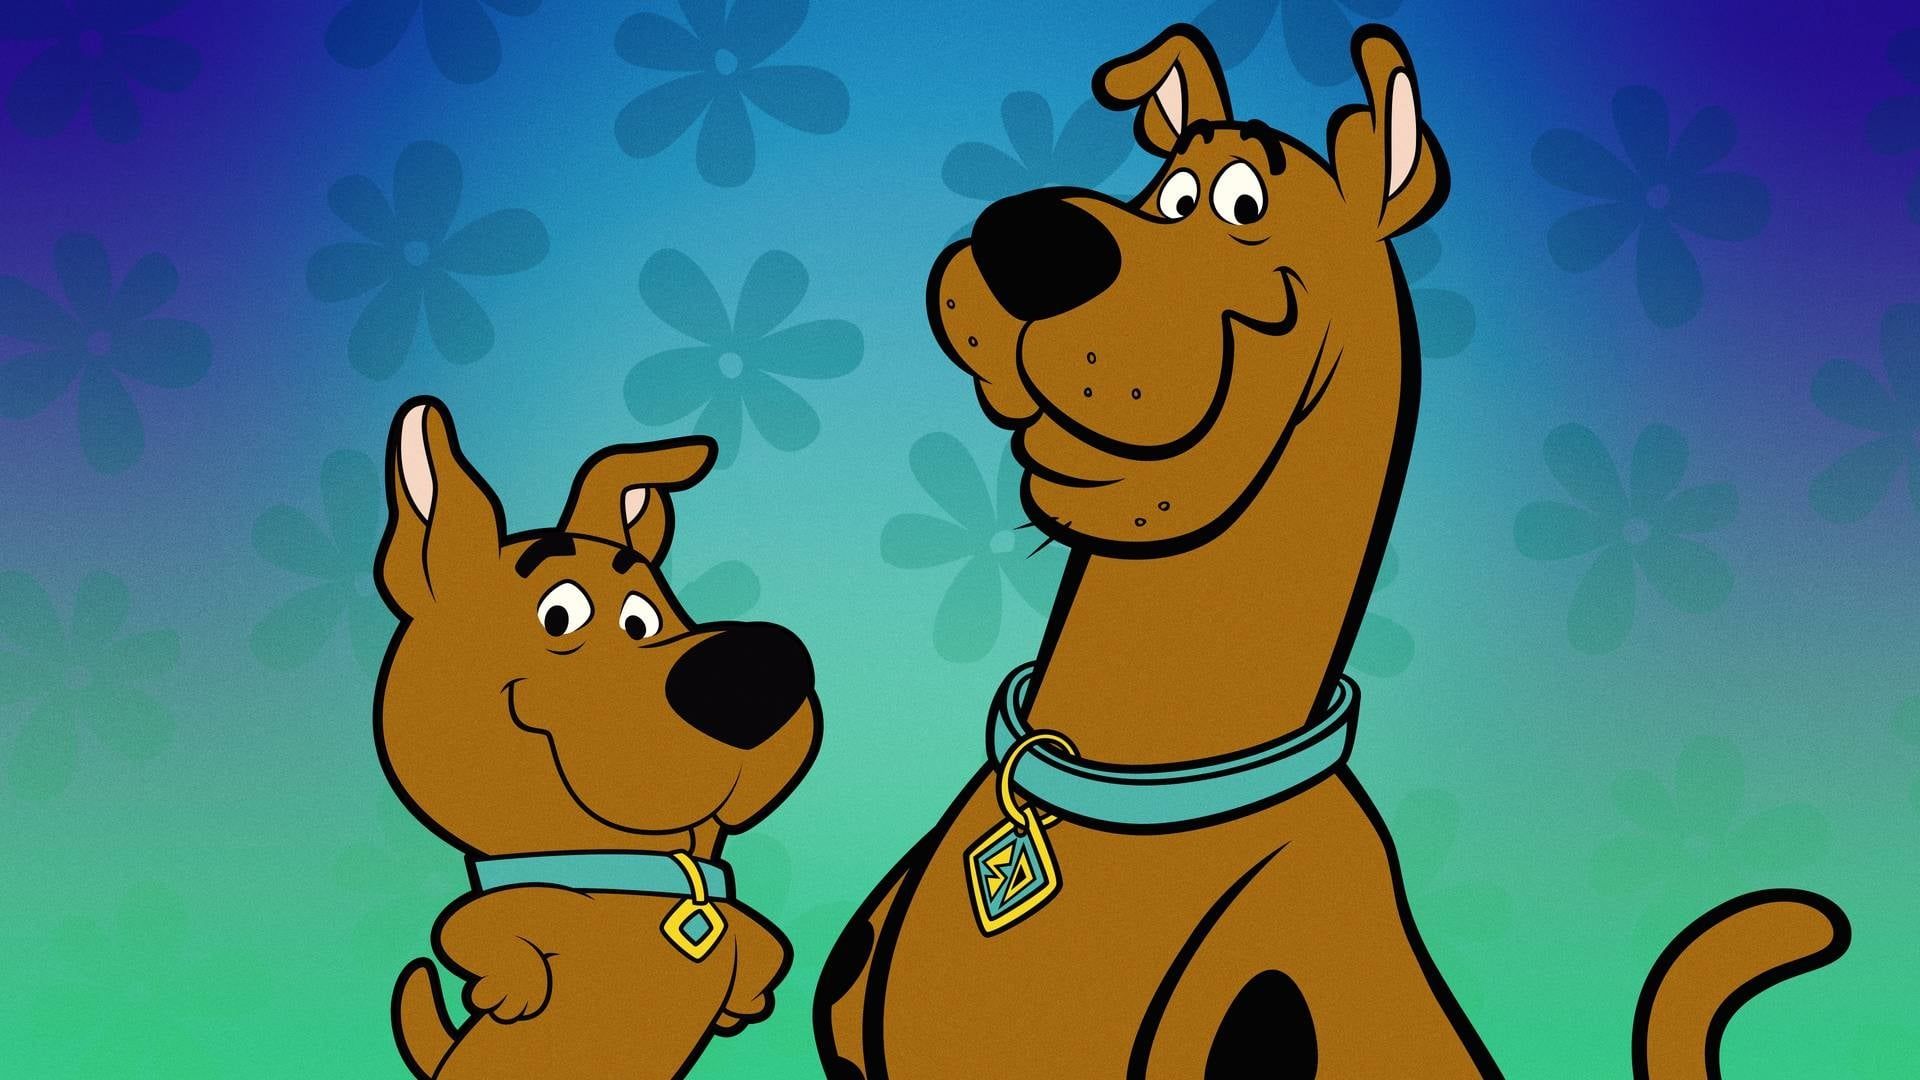 Cubierta de El show de Scooby-Doo y Scrappy-Doo